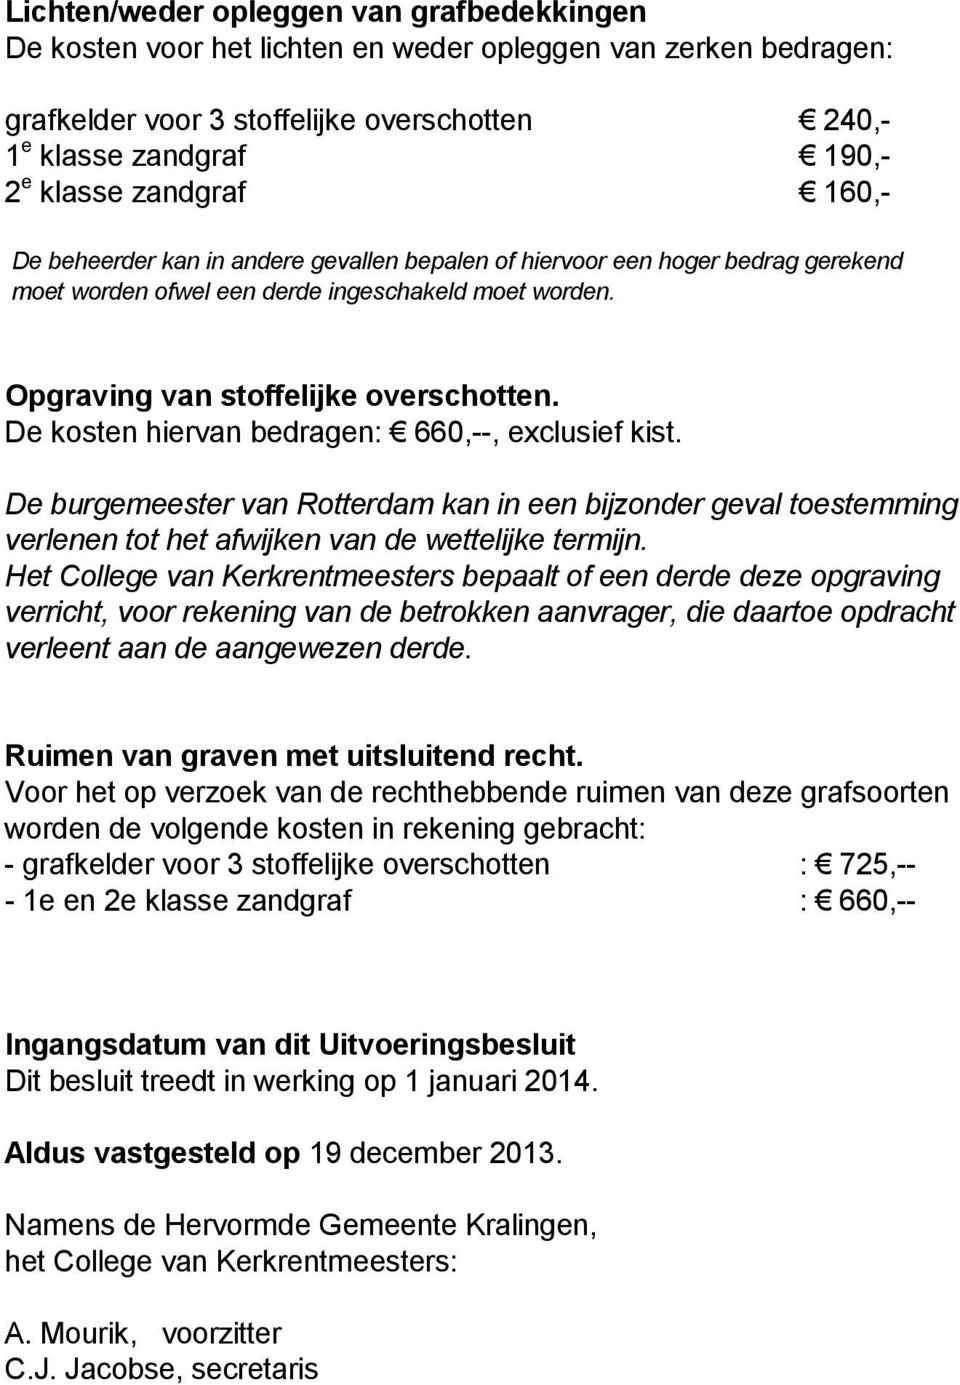 De kosten hiervan bedragen: 660,--, exclusief kist. De burgemeester van Rotterdam kan in een bijzonder geval toestemming verlenen tot het afwijken van de wettelijke termijn.